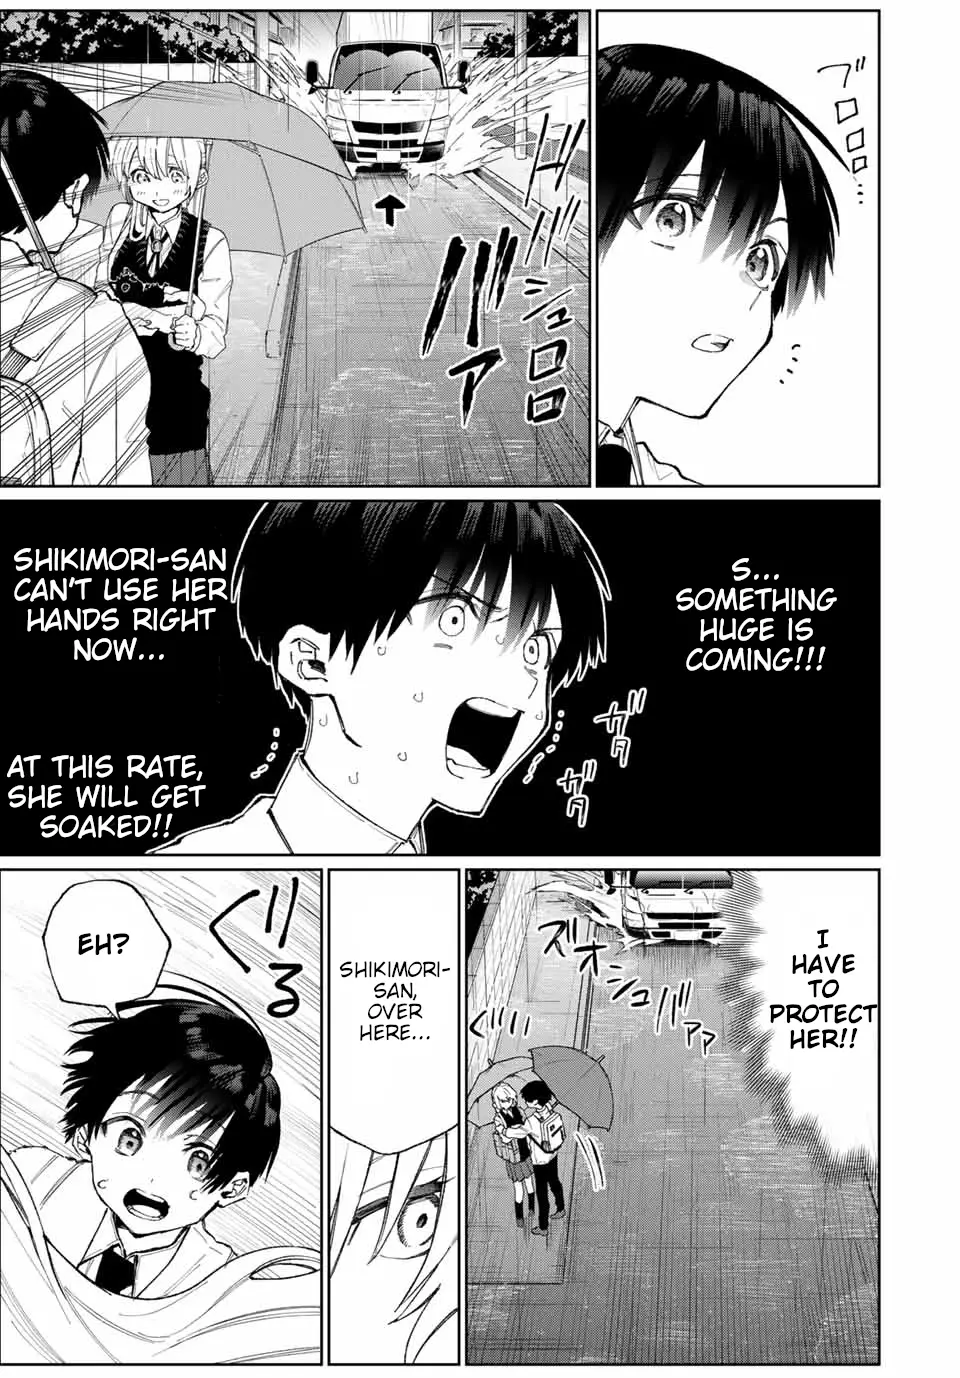 Shikimori's Not Just A Cutie - 22 page 6